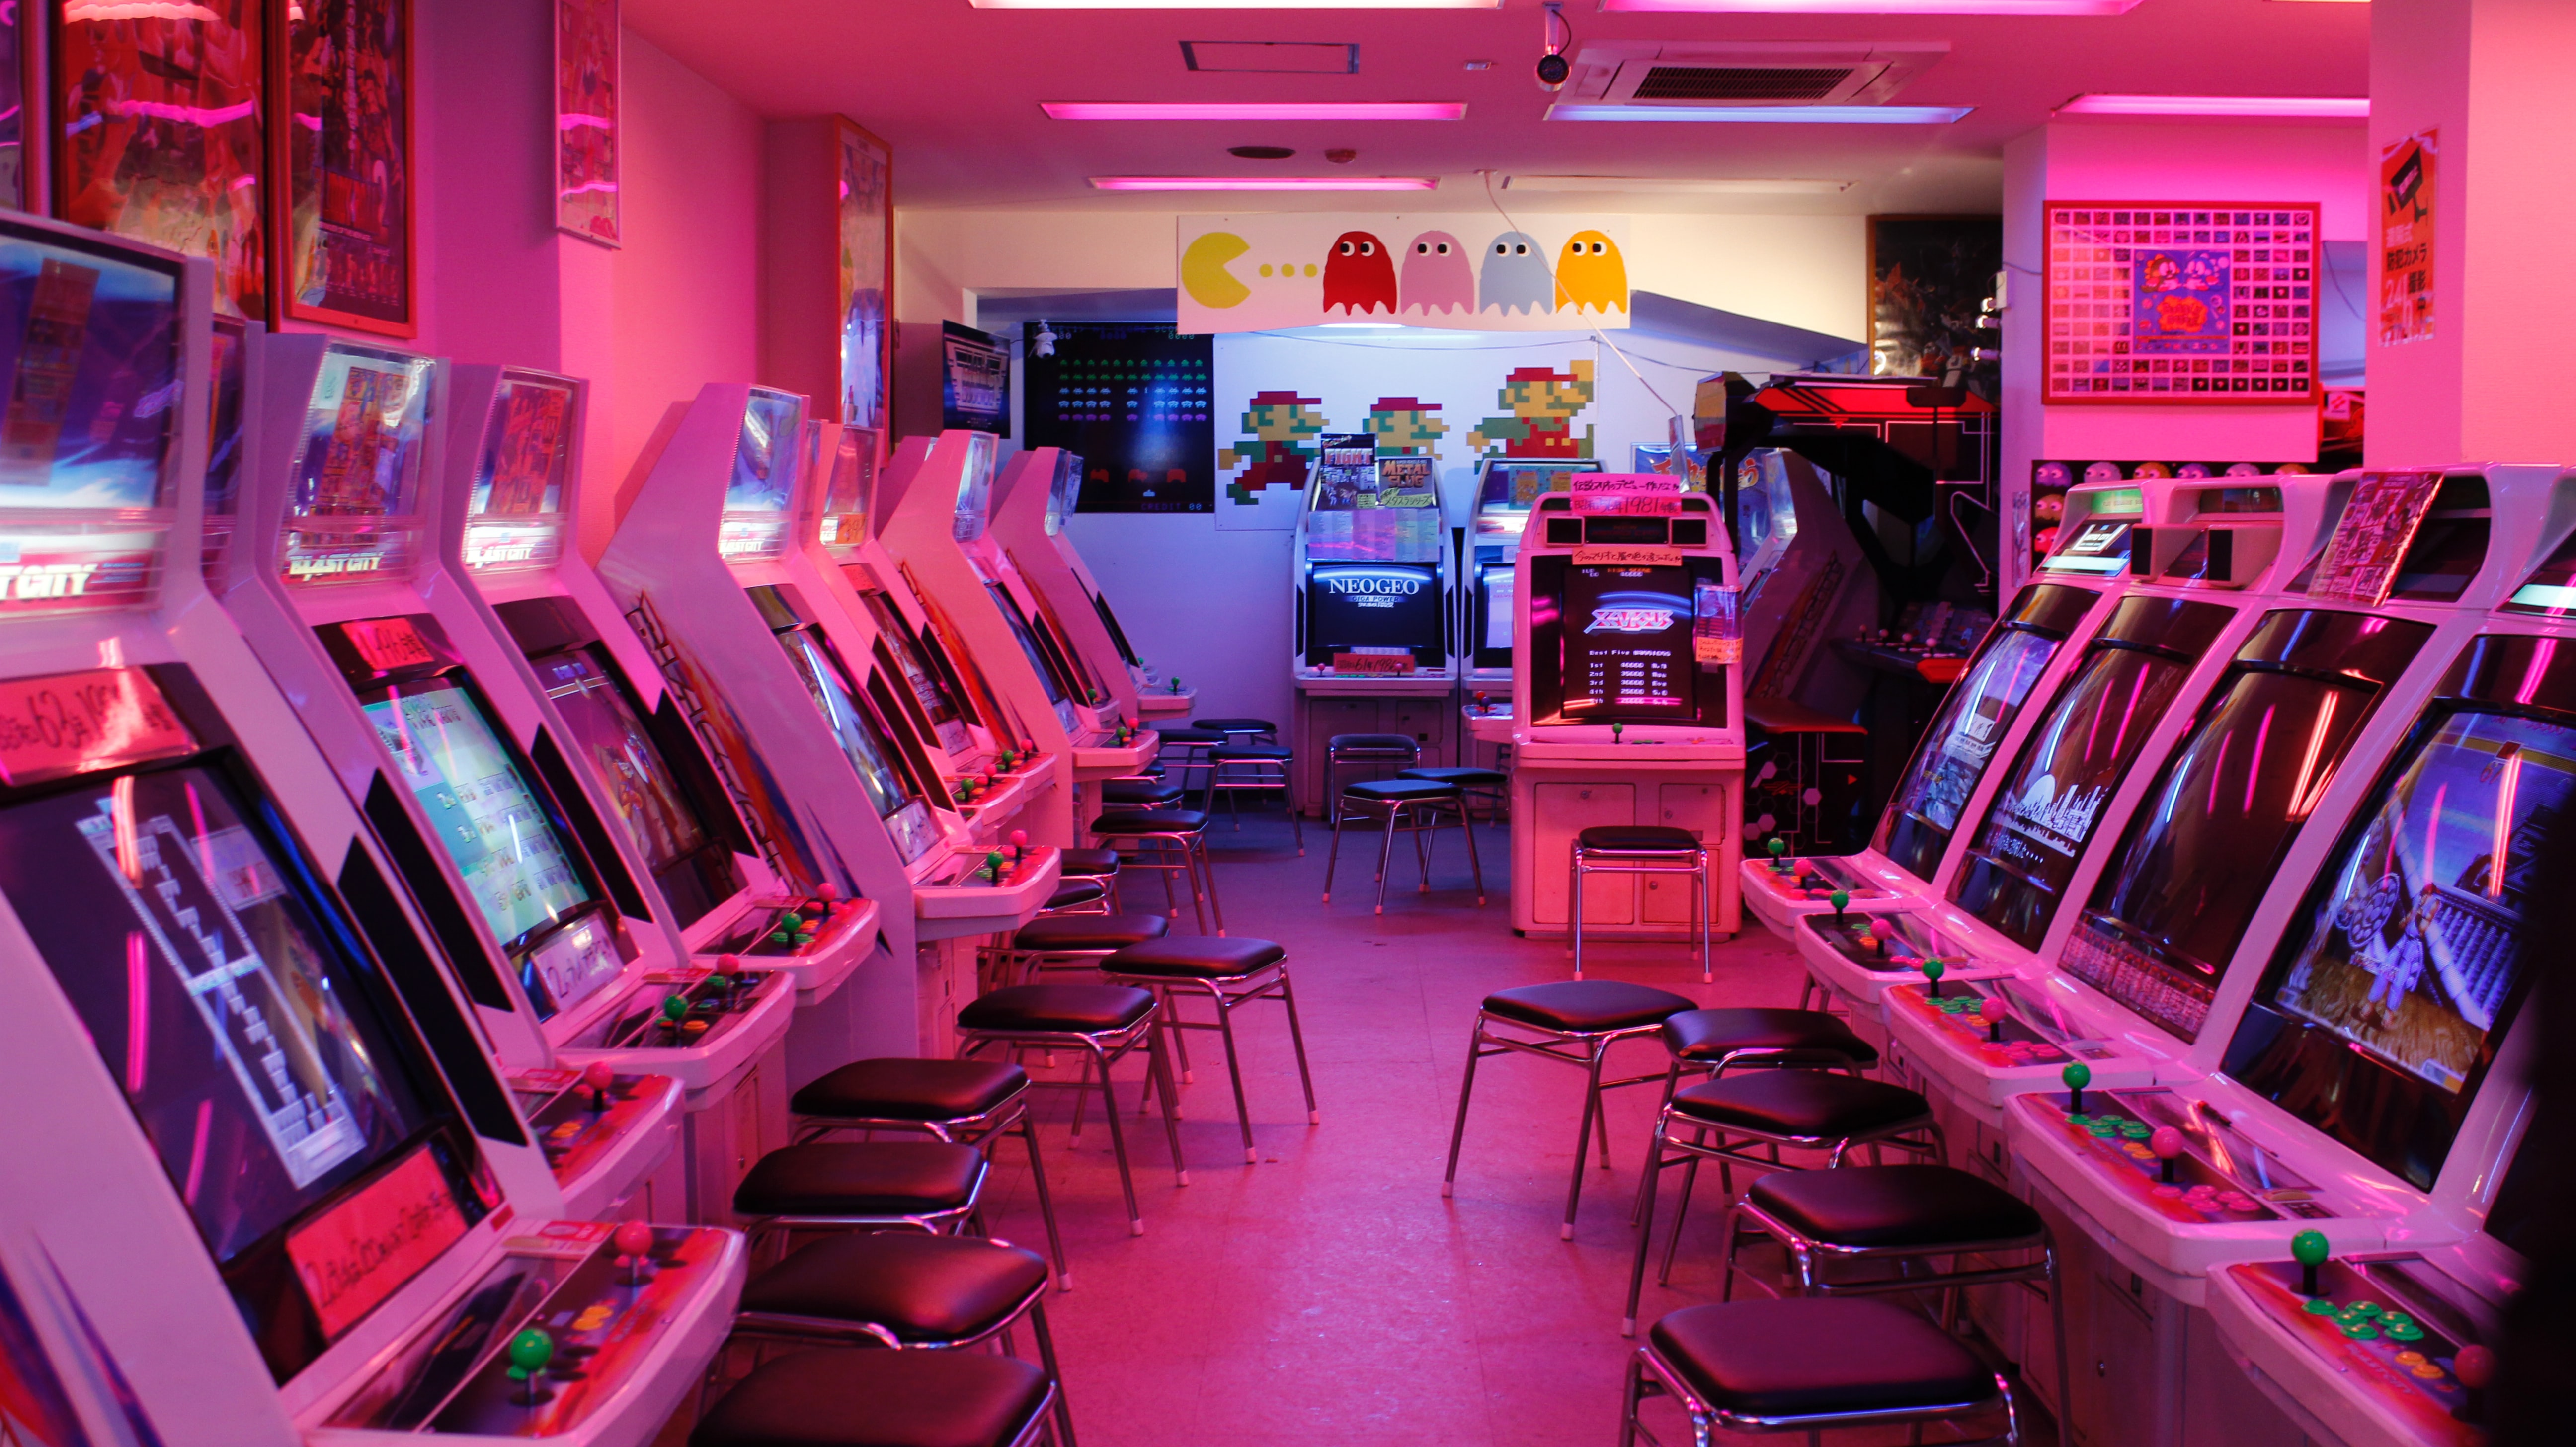 General 5184x2912 pink retrowave arcade  vintage video games